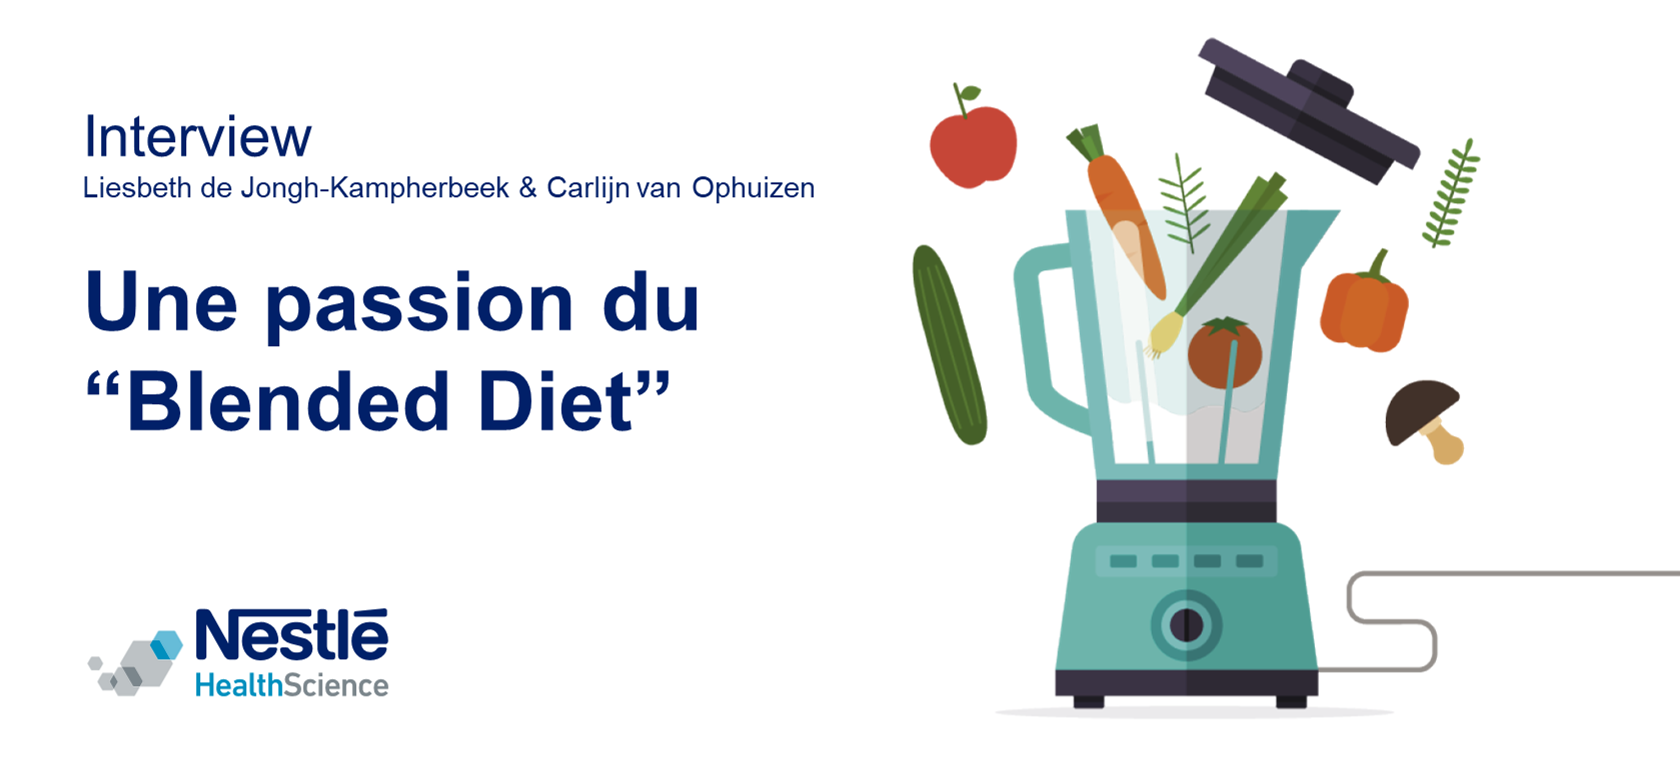 Interview Blended Diet - Liesbeth de Jongh & Carlijn van Ophuizen